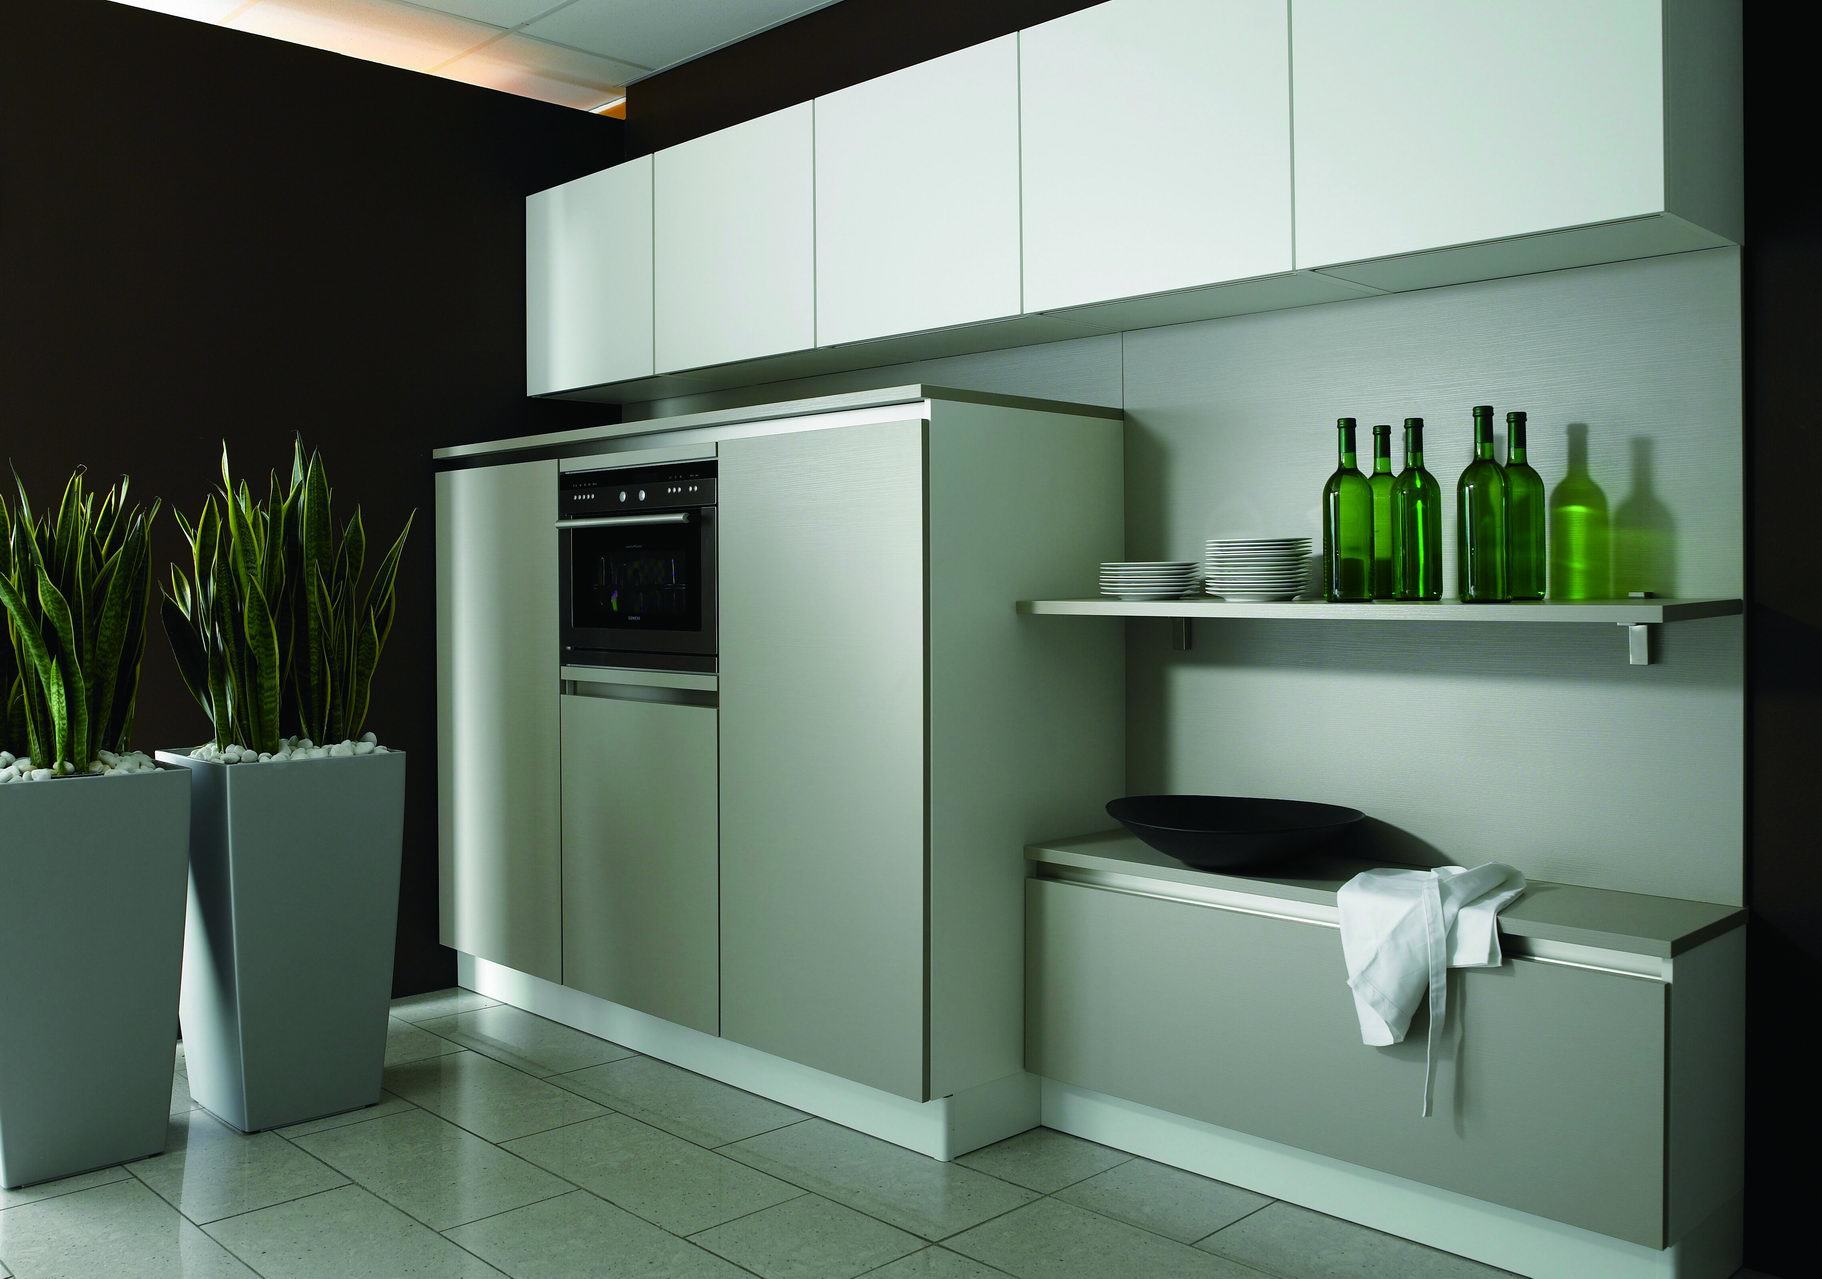 2014 Hot Sales Lacquer Kitchen Cabinet (KC10502)